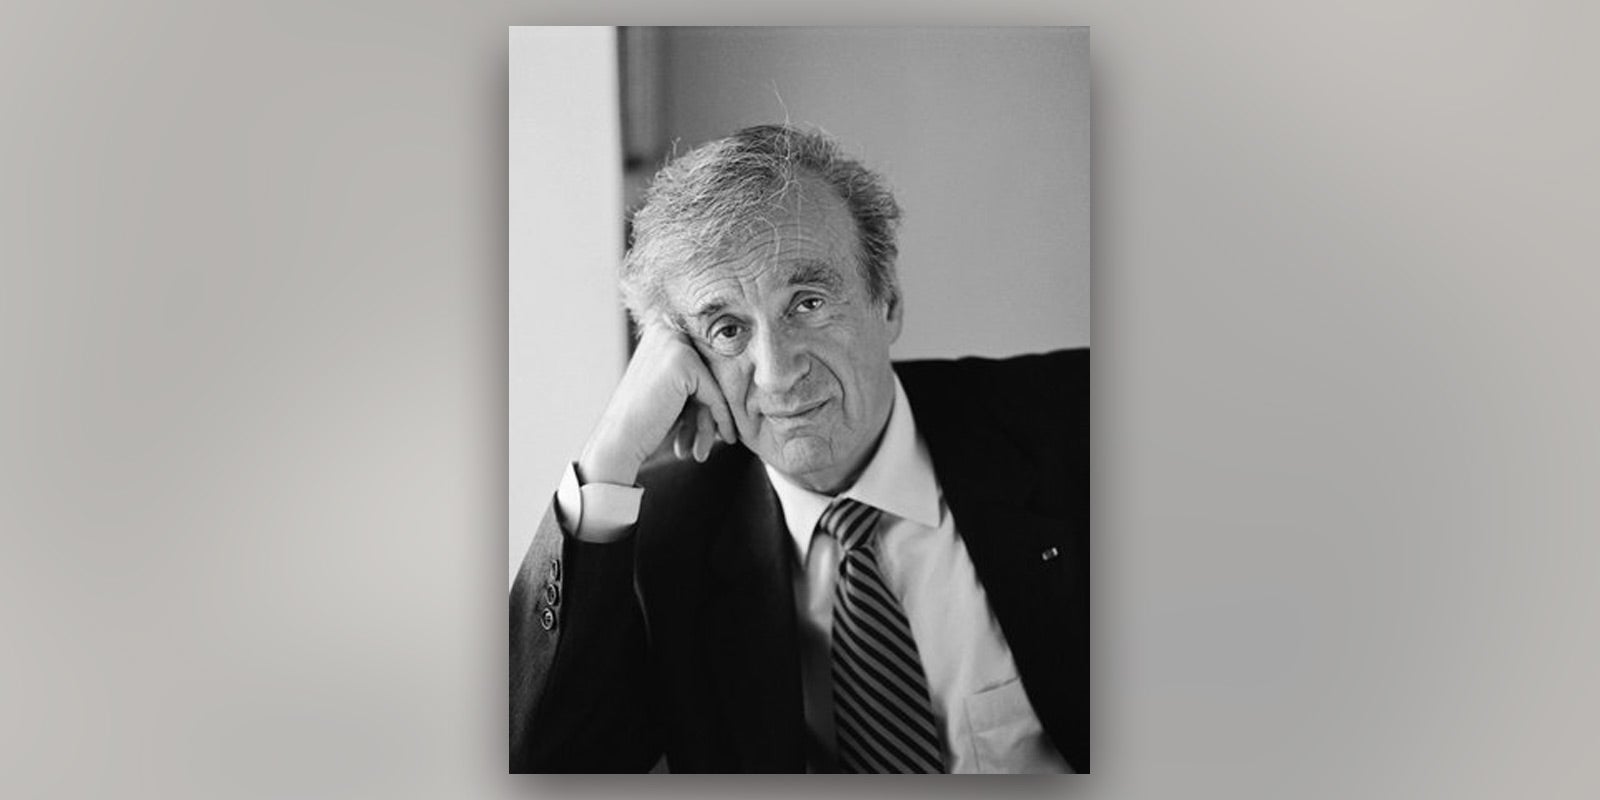 Elie Wiesel, Holocaust Survivor and Noble Laureate, Dies at 87